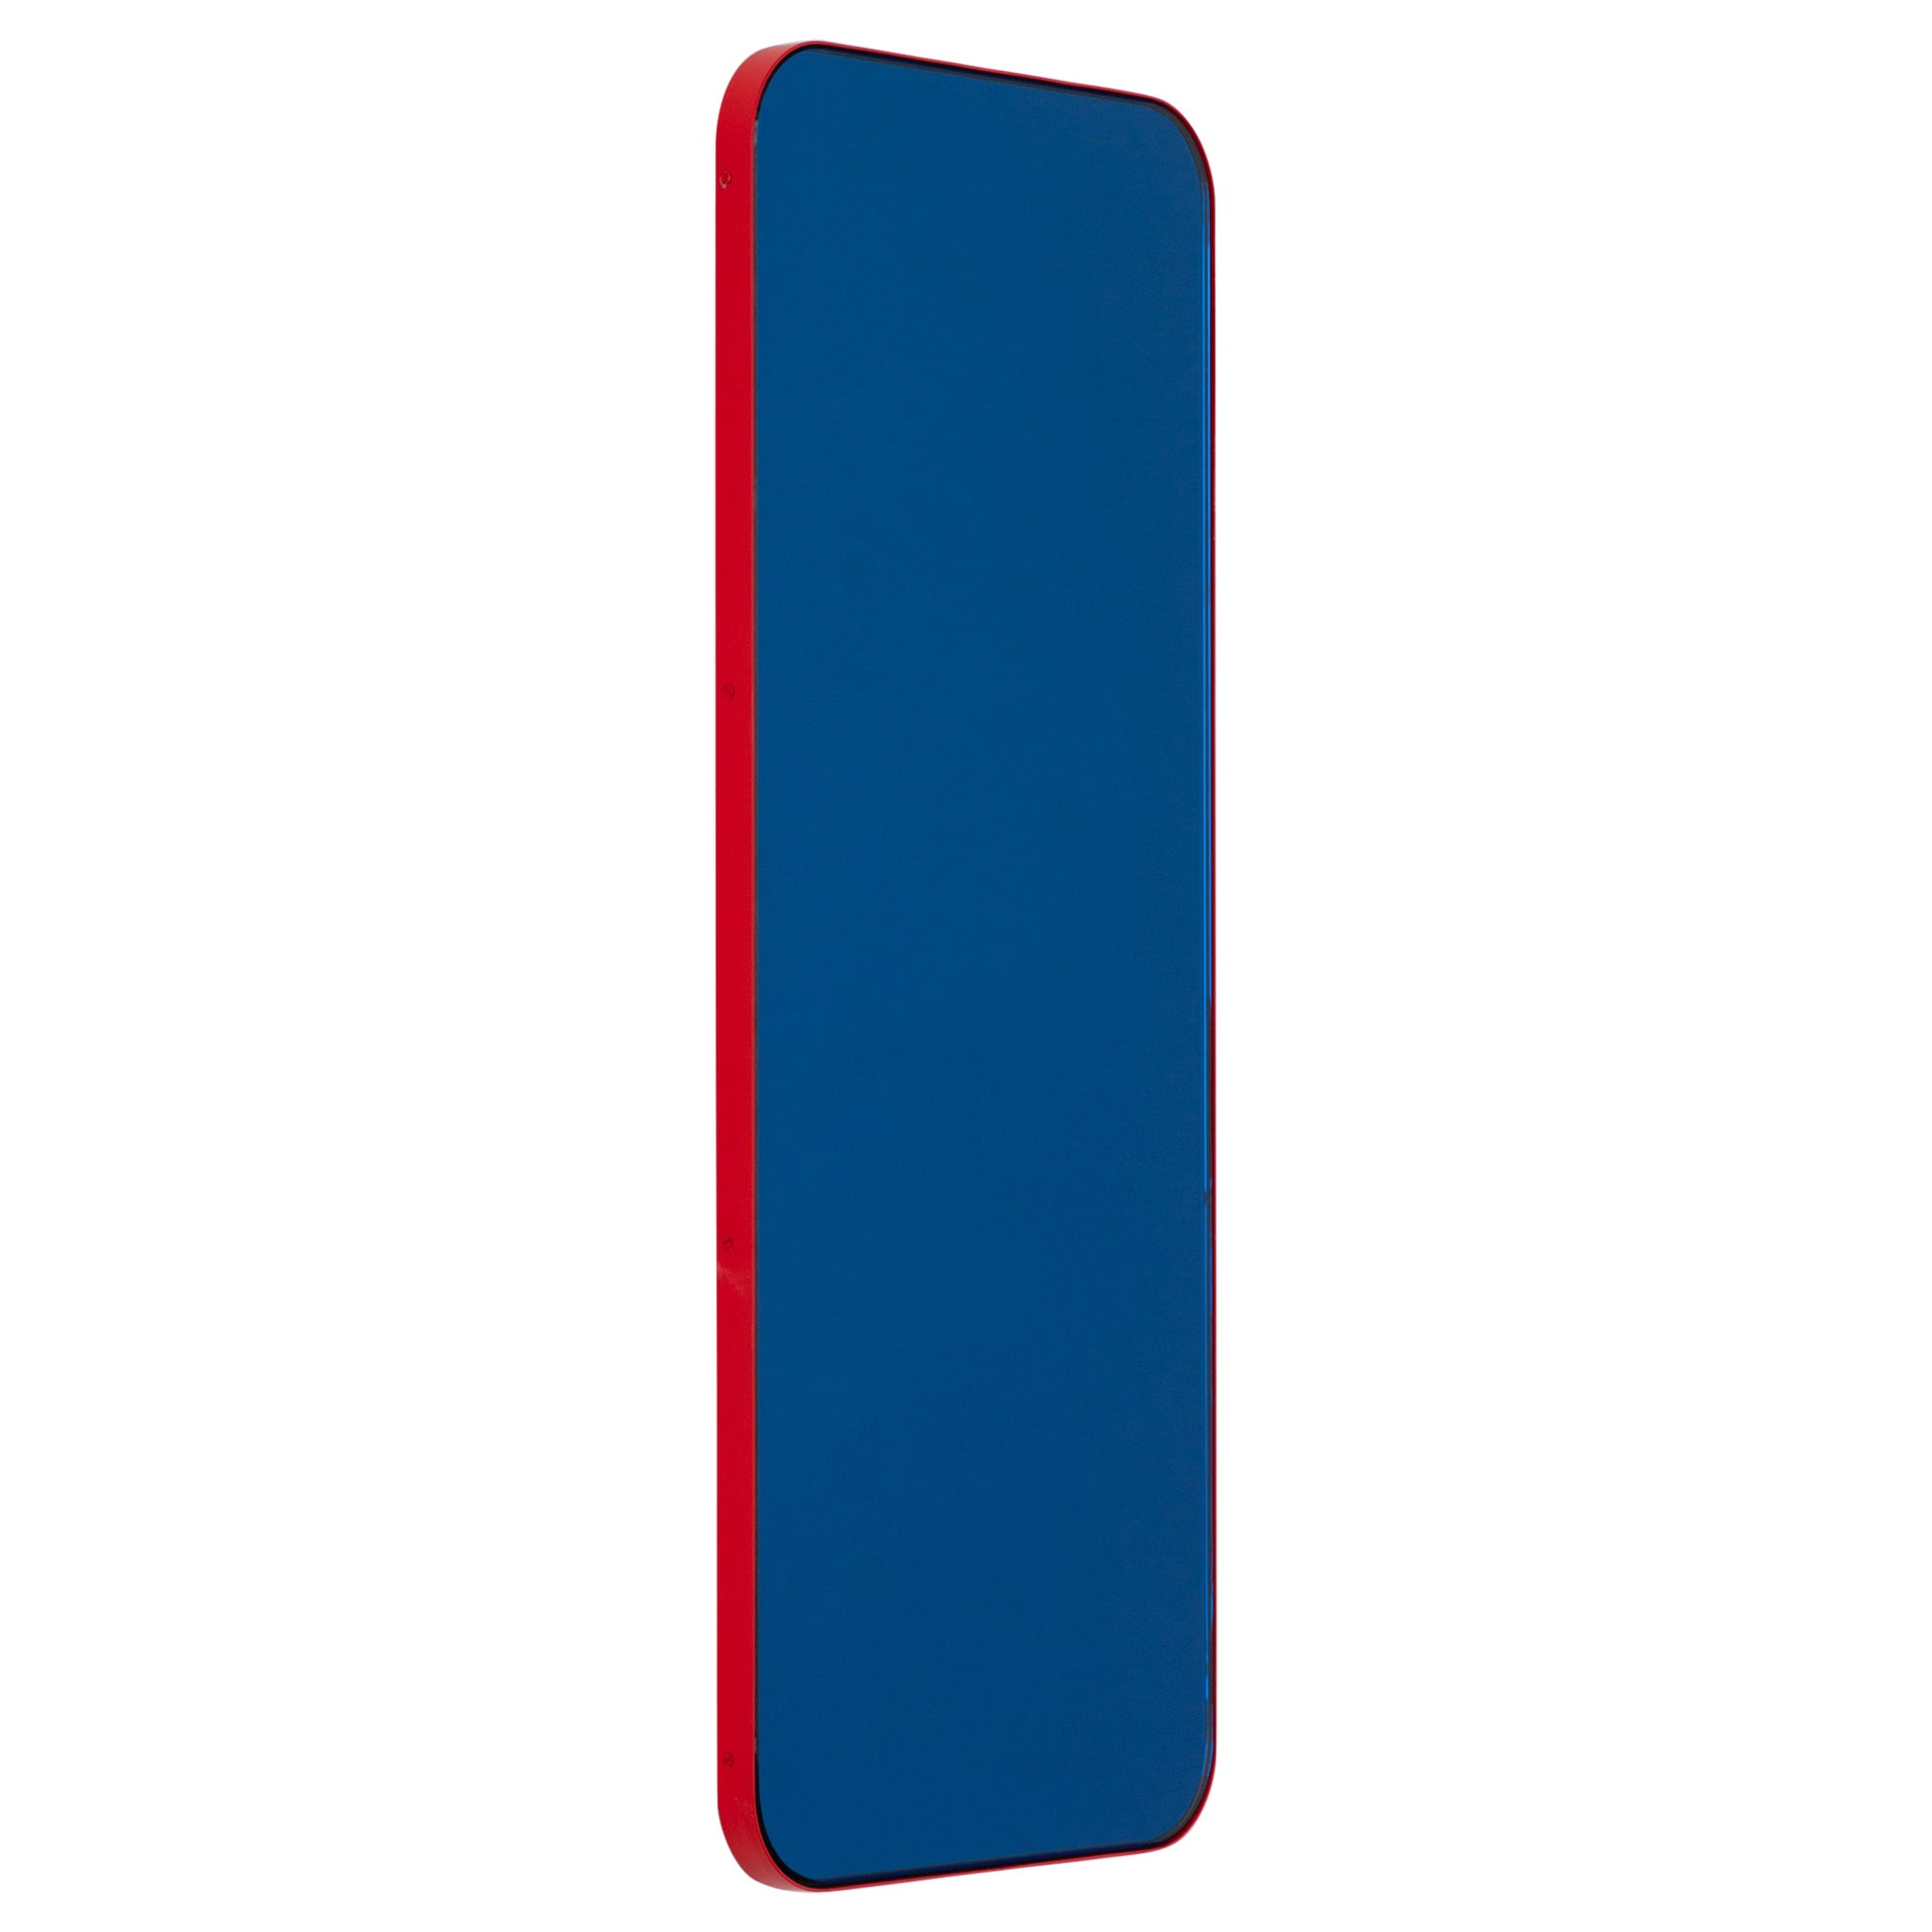 Miroir rectangulaire contemporain bleu avec cadre rouge de la collection Quadris, petit